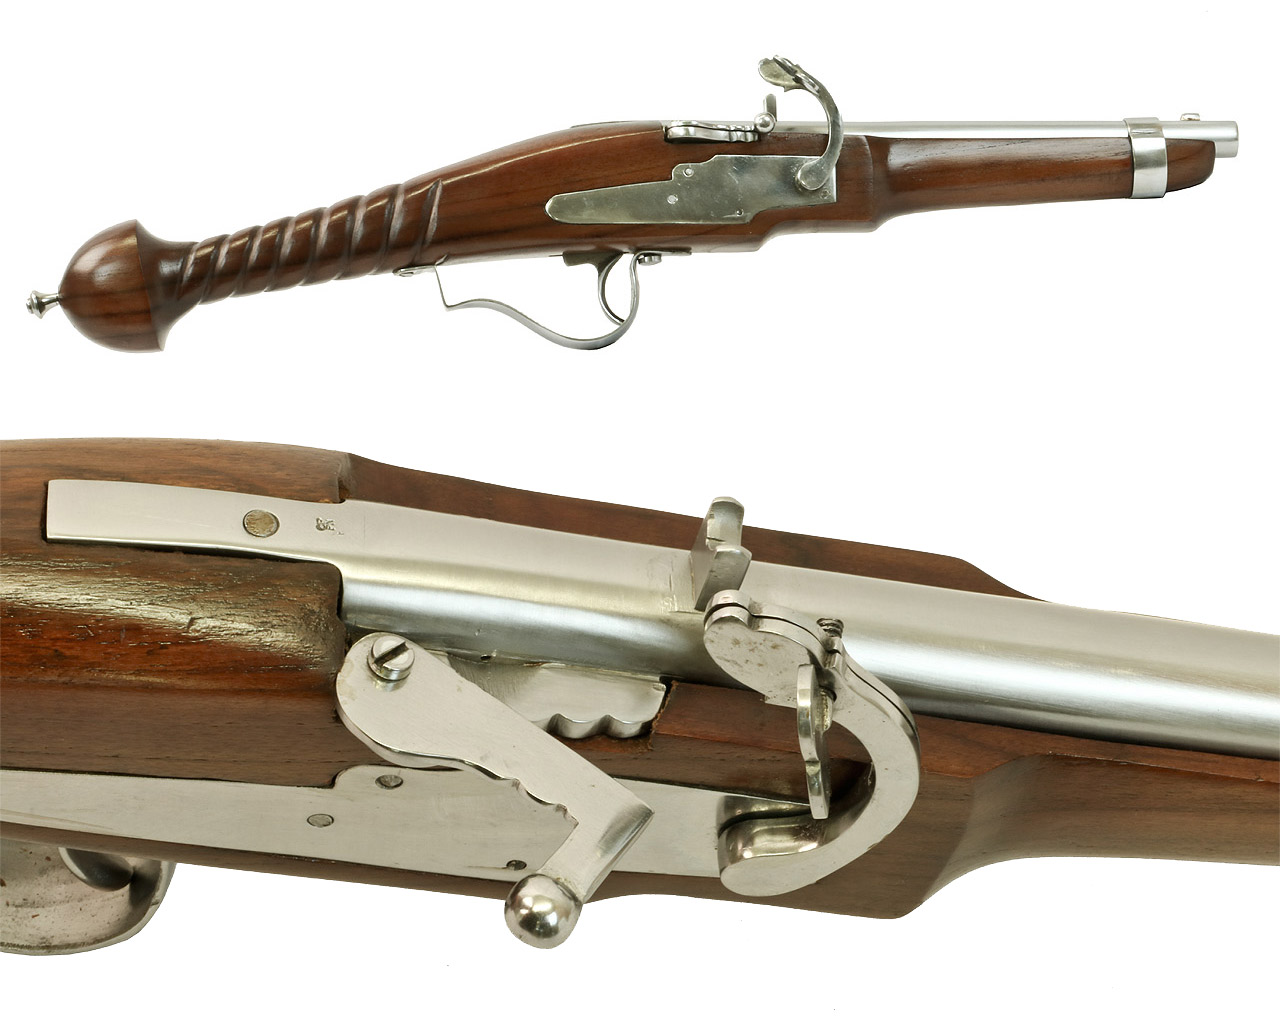 Vorderlader Luntenschlosspistole Matchlock Pistol Kaliber .63 bzw. 16 mm gedrehter Griff (P18)